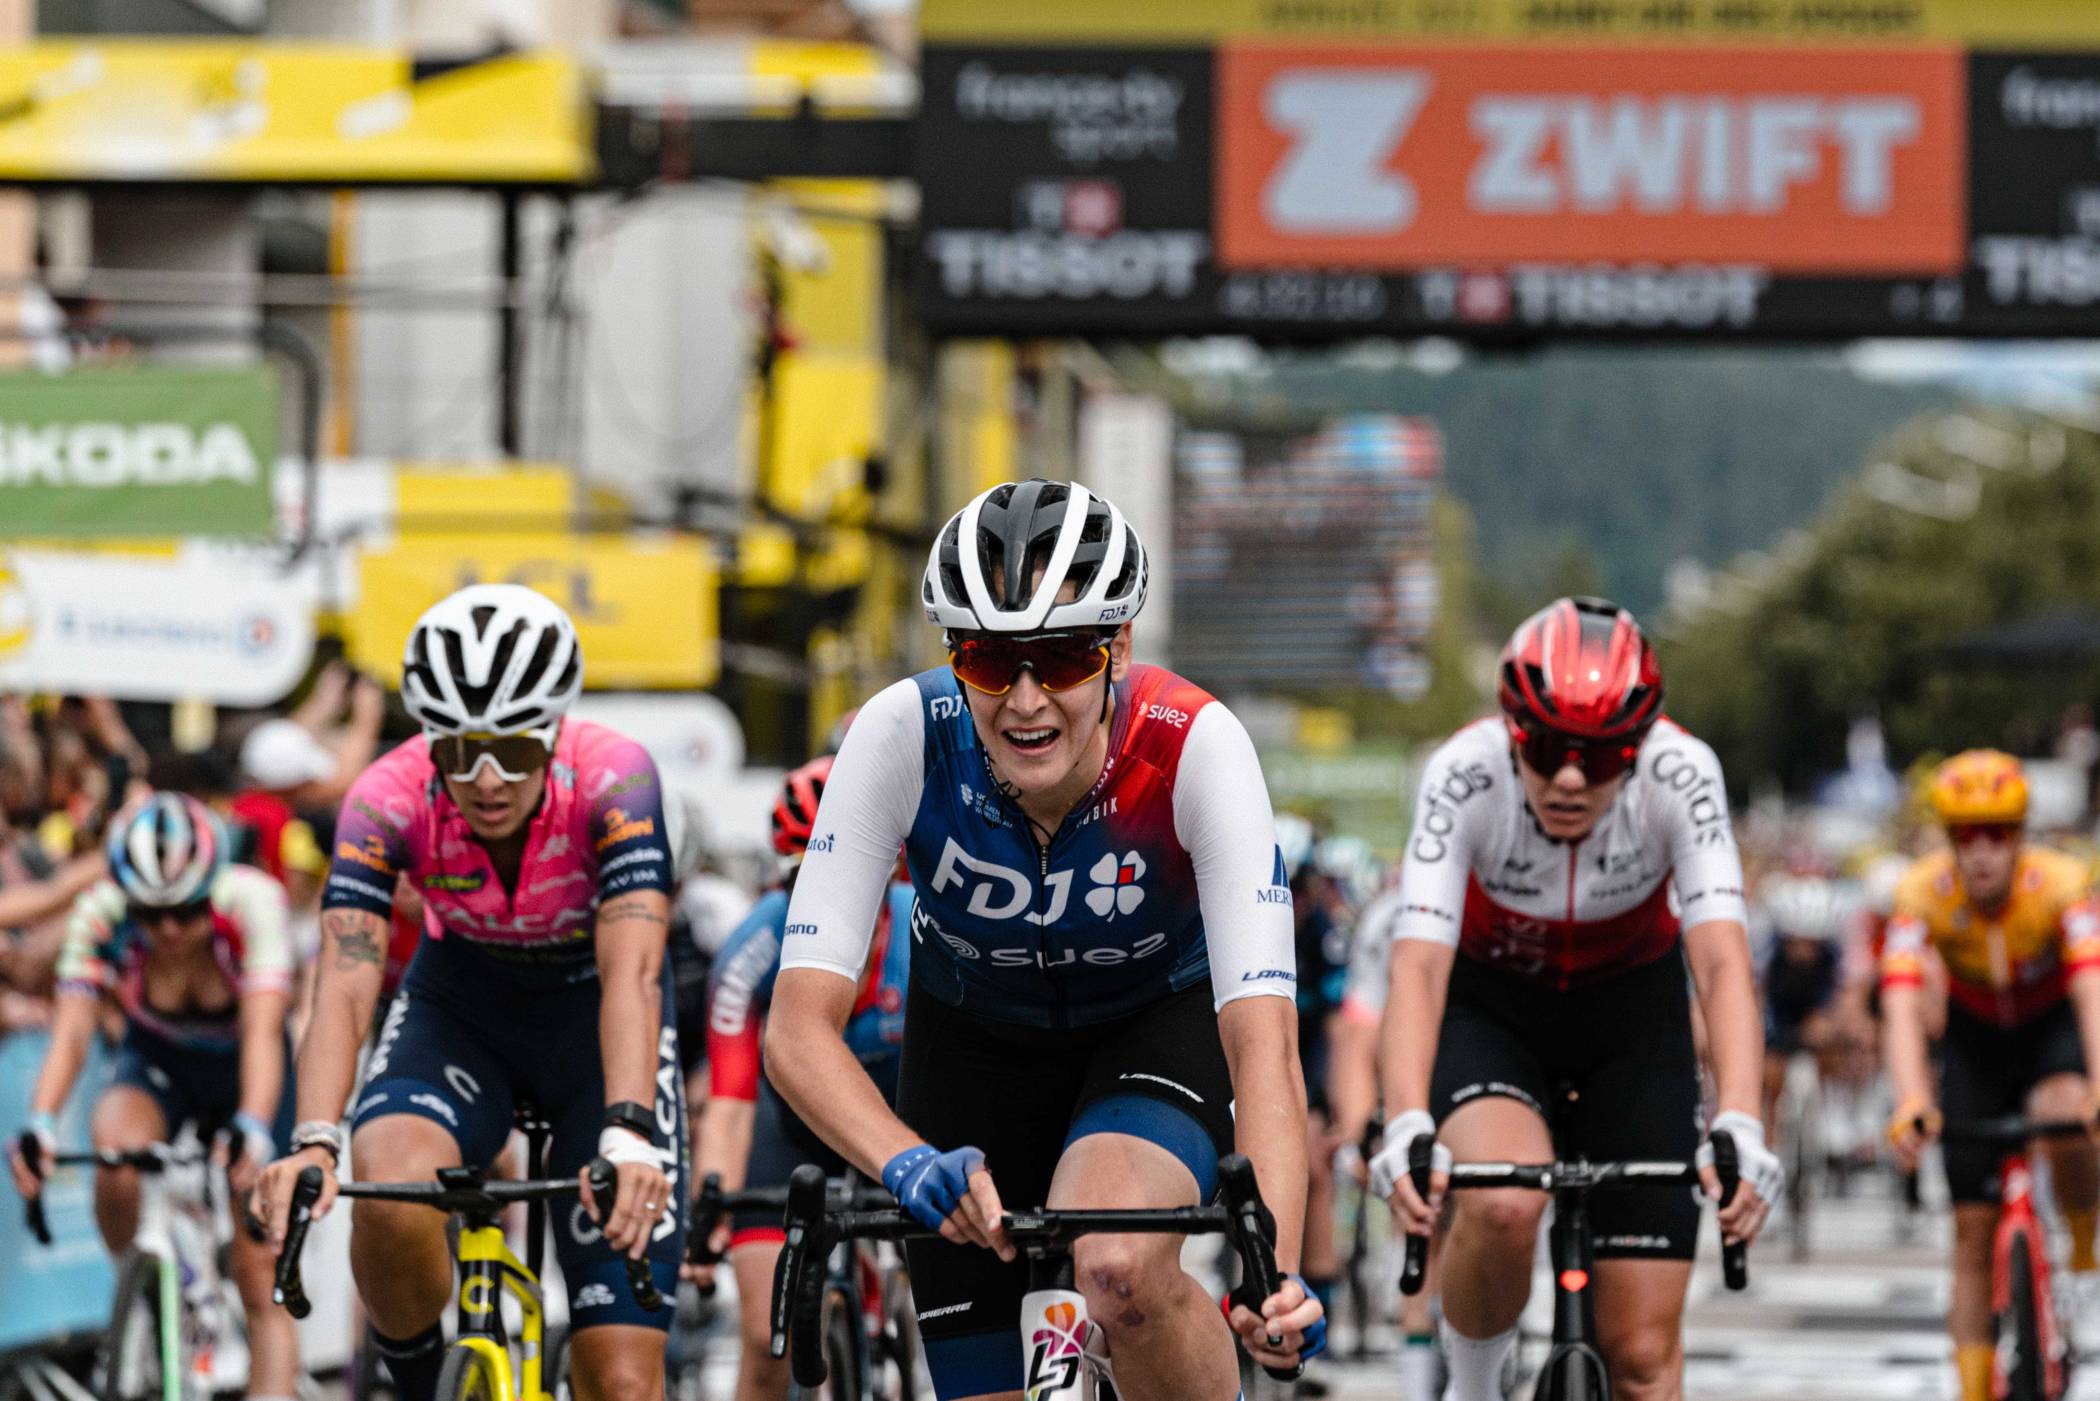 Vittoria huitième de l'étape 5 du Tour de France